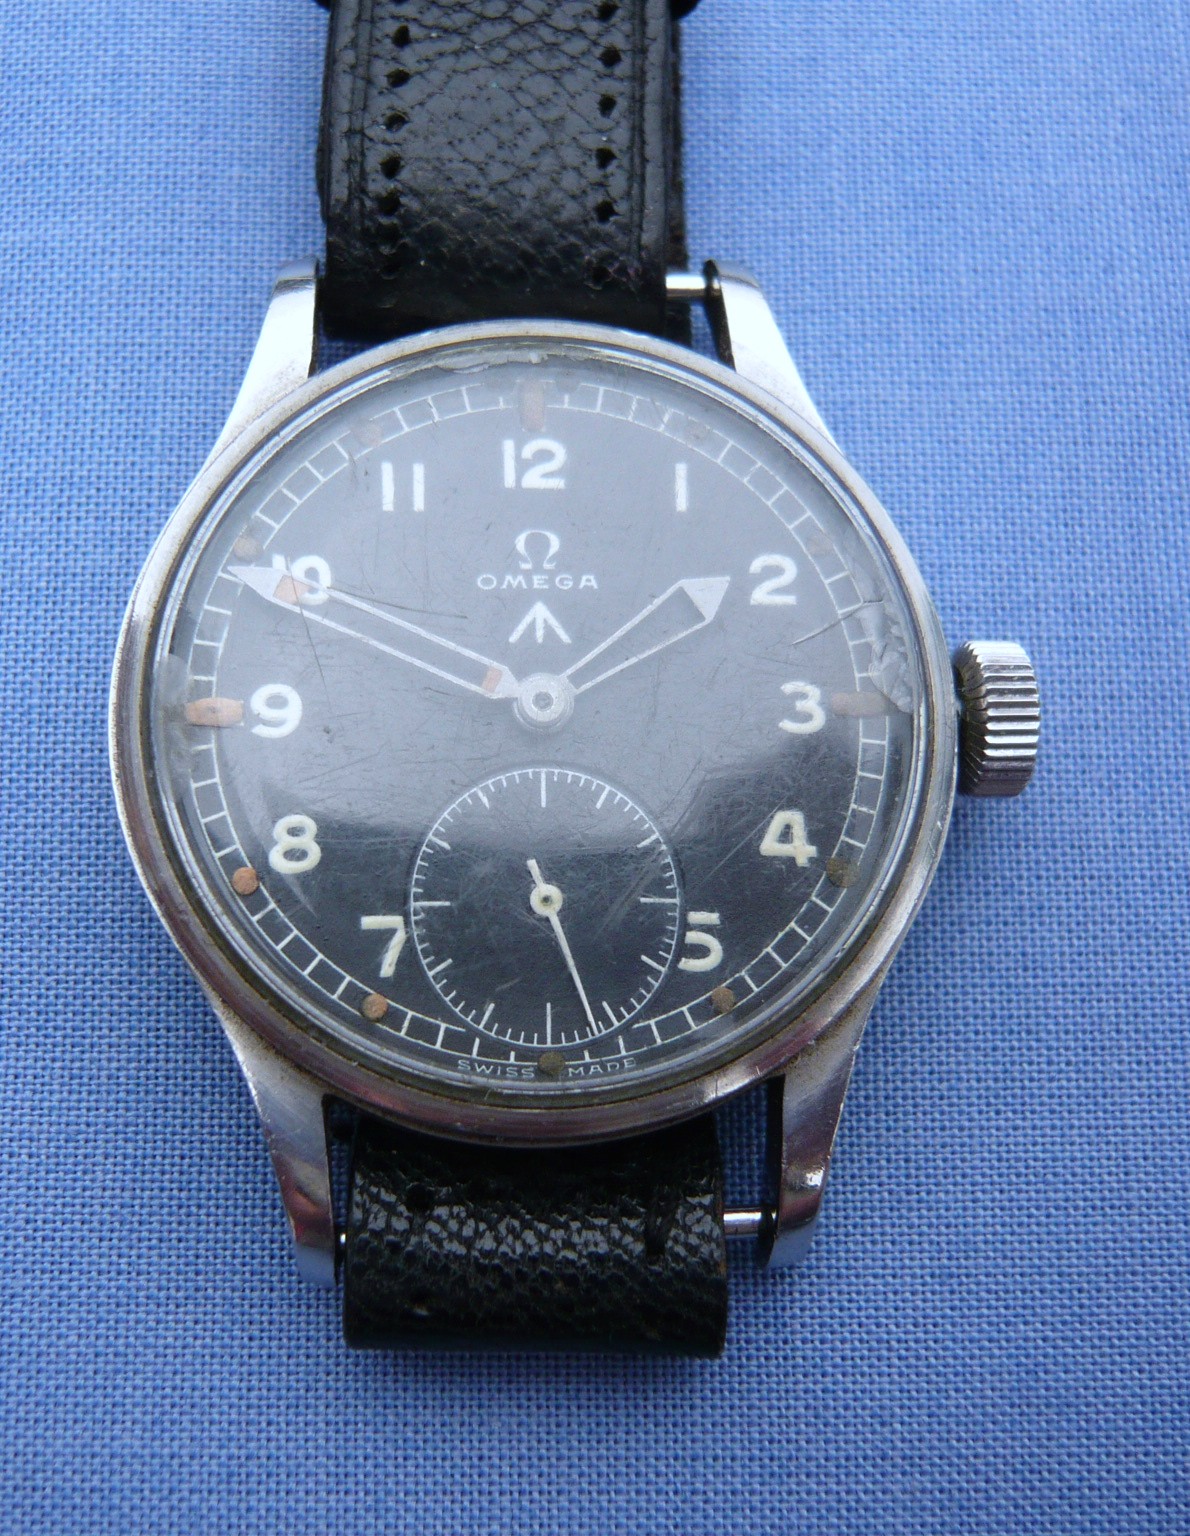 First Omega w.w.w. Military Wrist Watch 